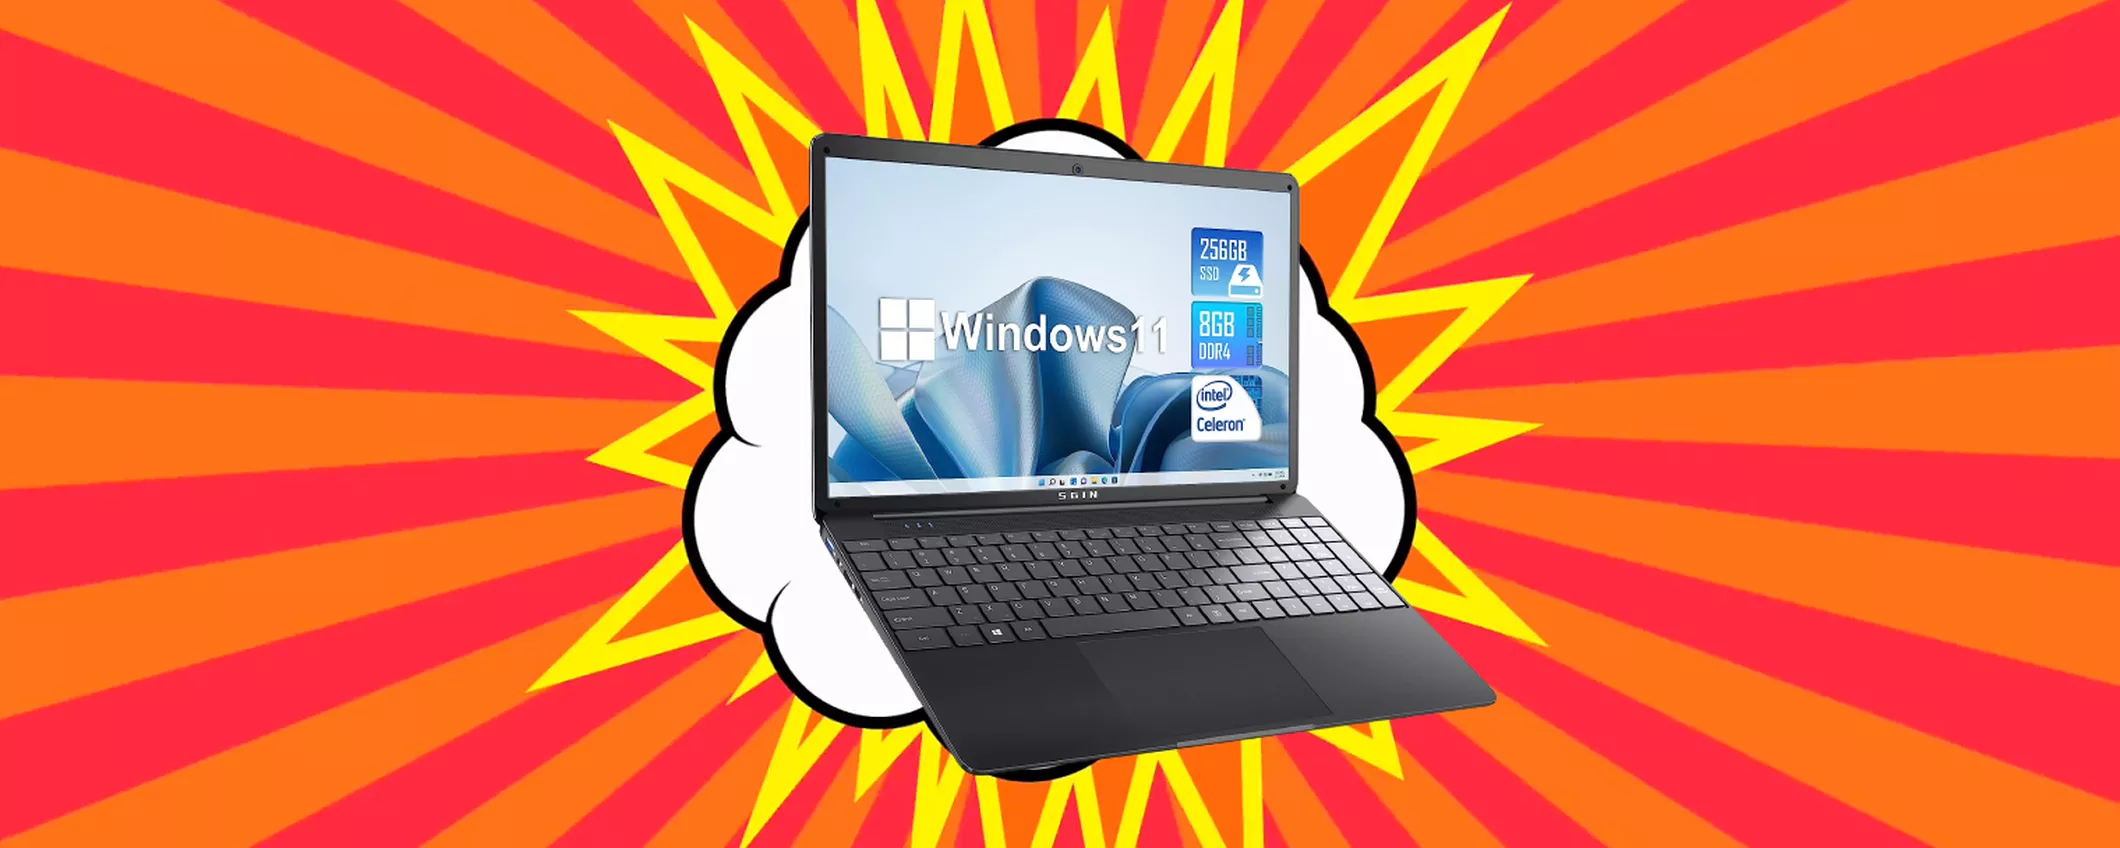 RISPARMIA PIU' DI 700 EURO sul Notebook con Windows 11: FOLLIA AMAZON!